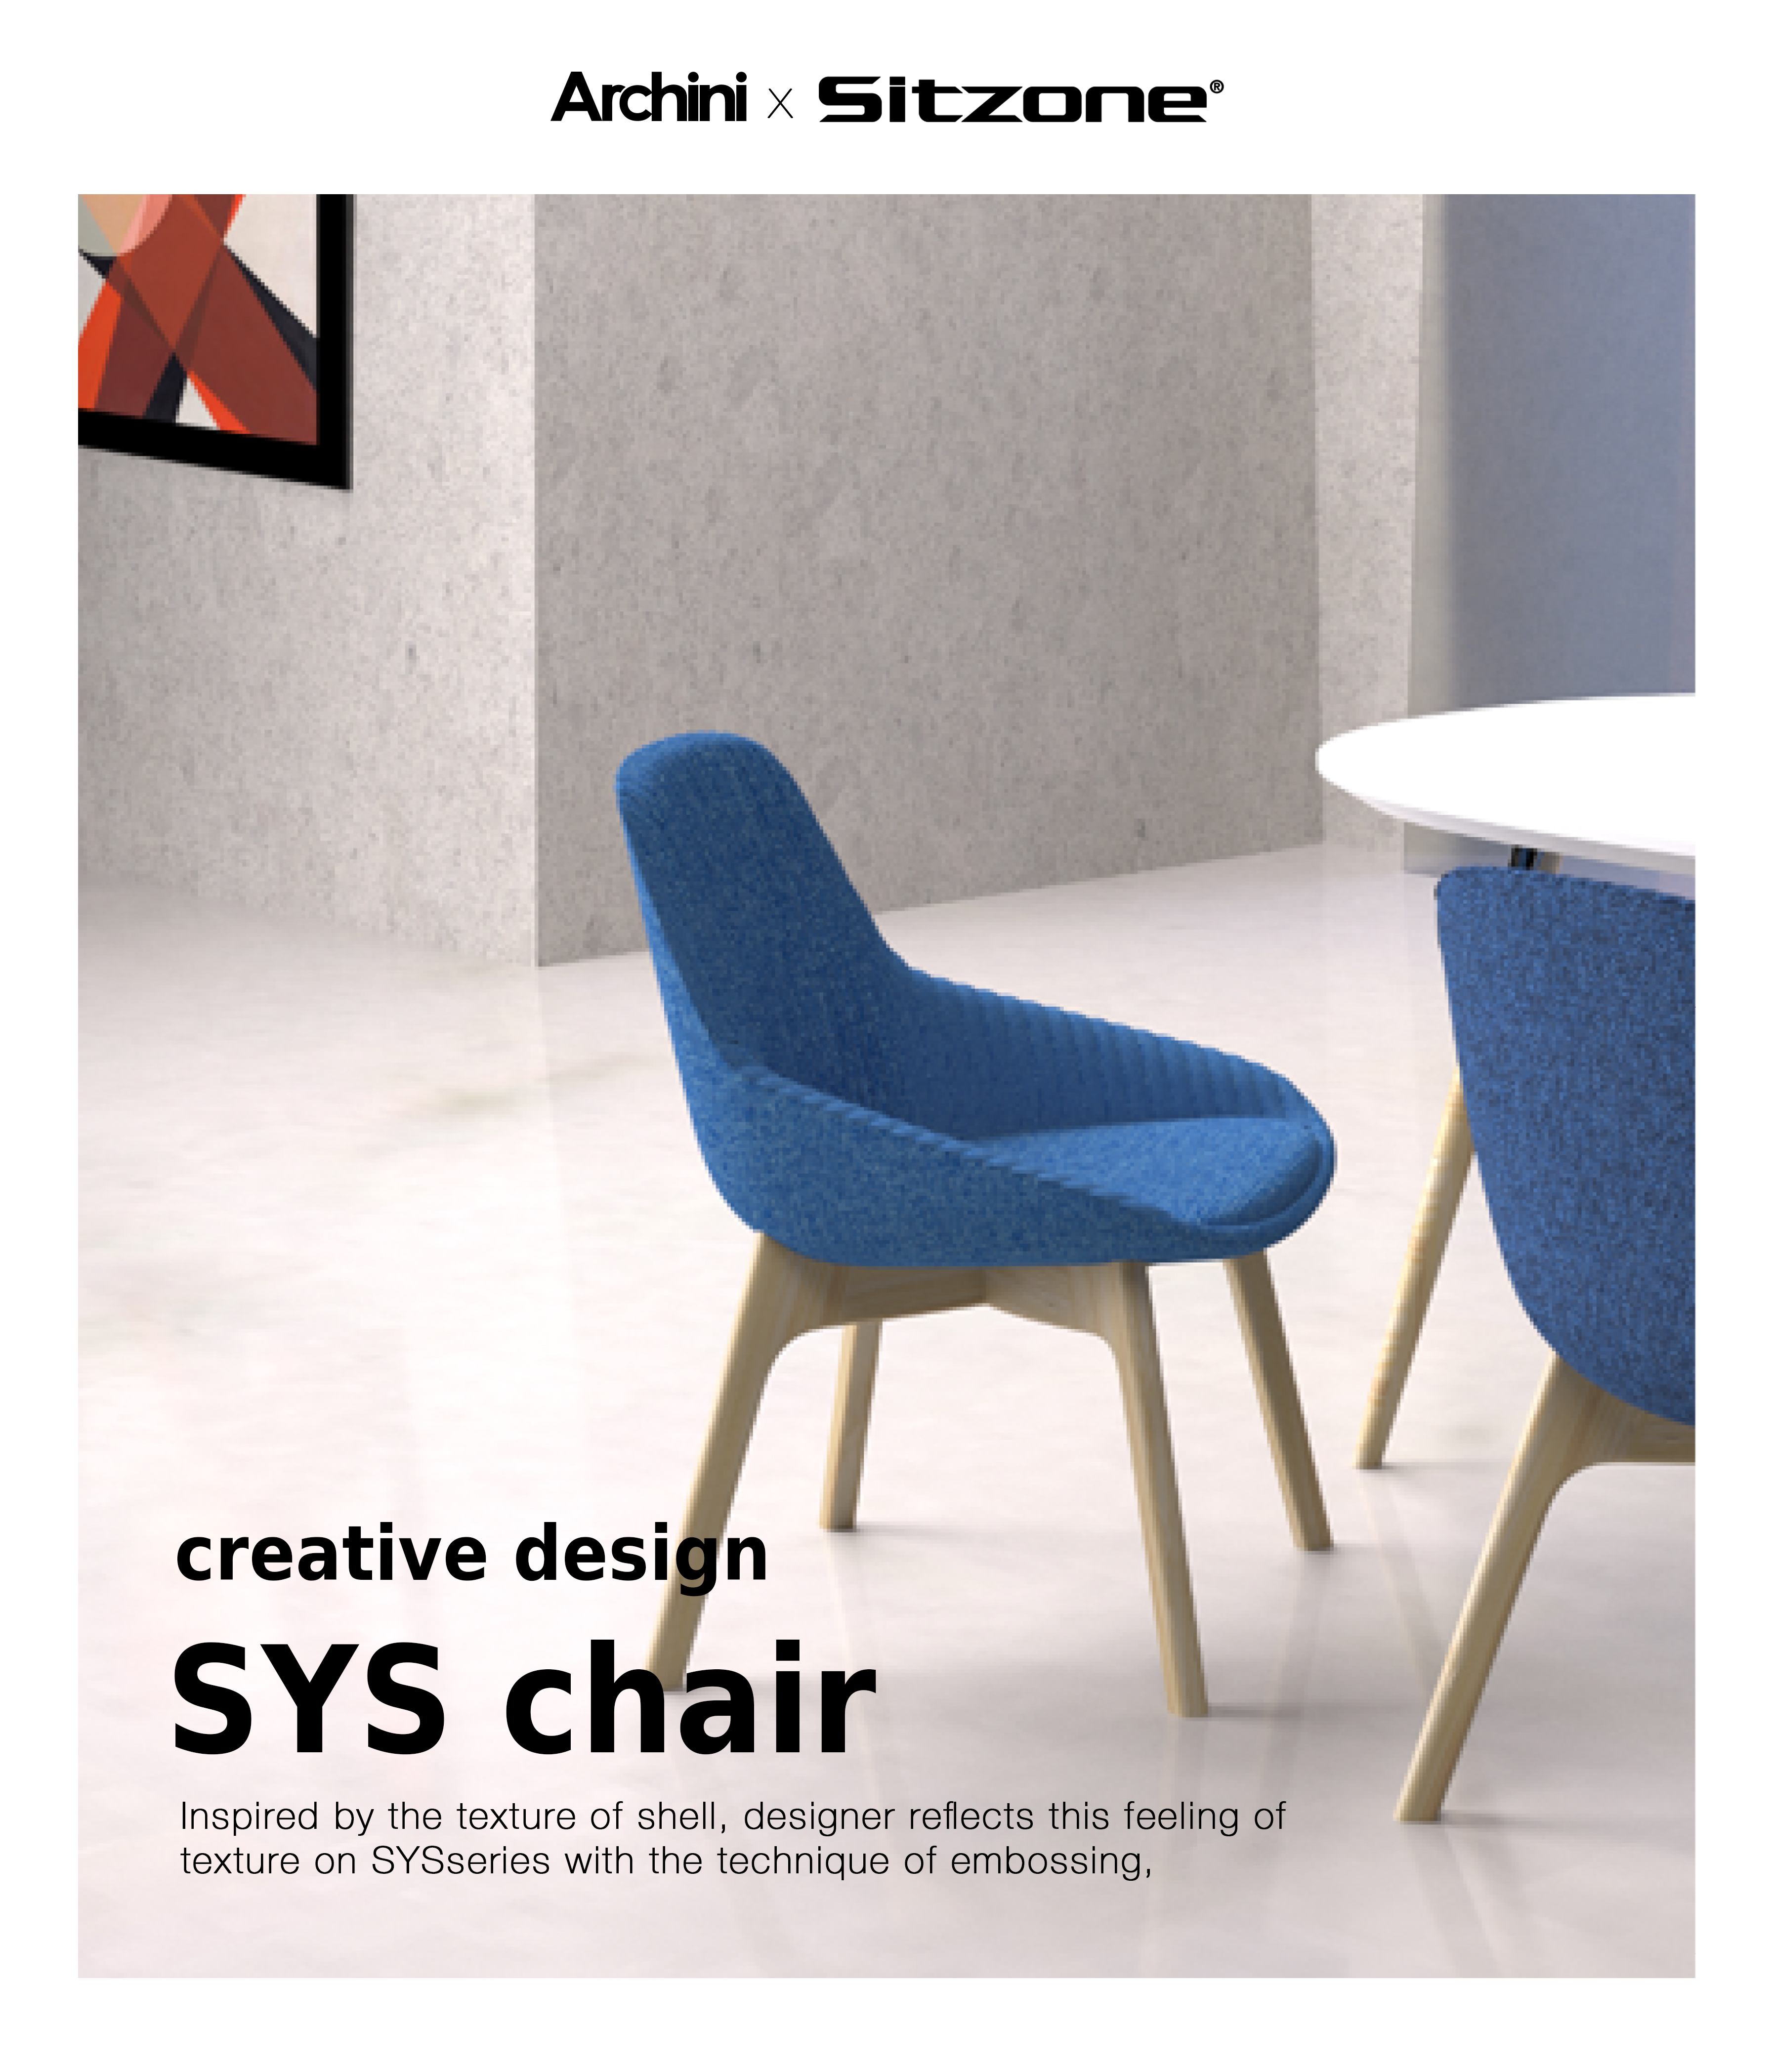 Hot sale High-tech Office Chair - Leisure Chair Creative Design SYS CHAIR  – SitZone